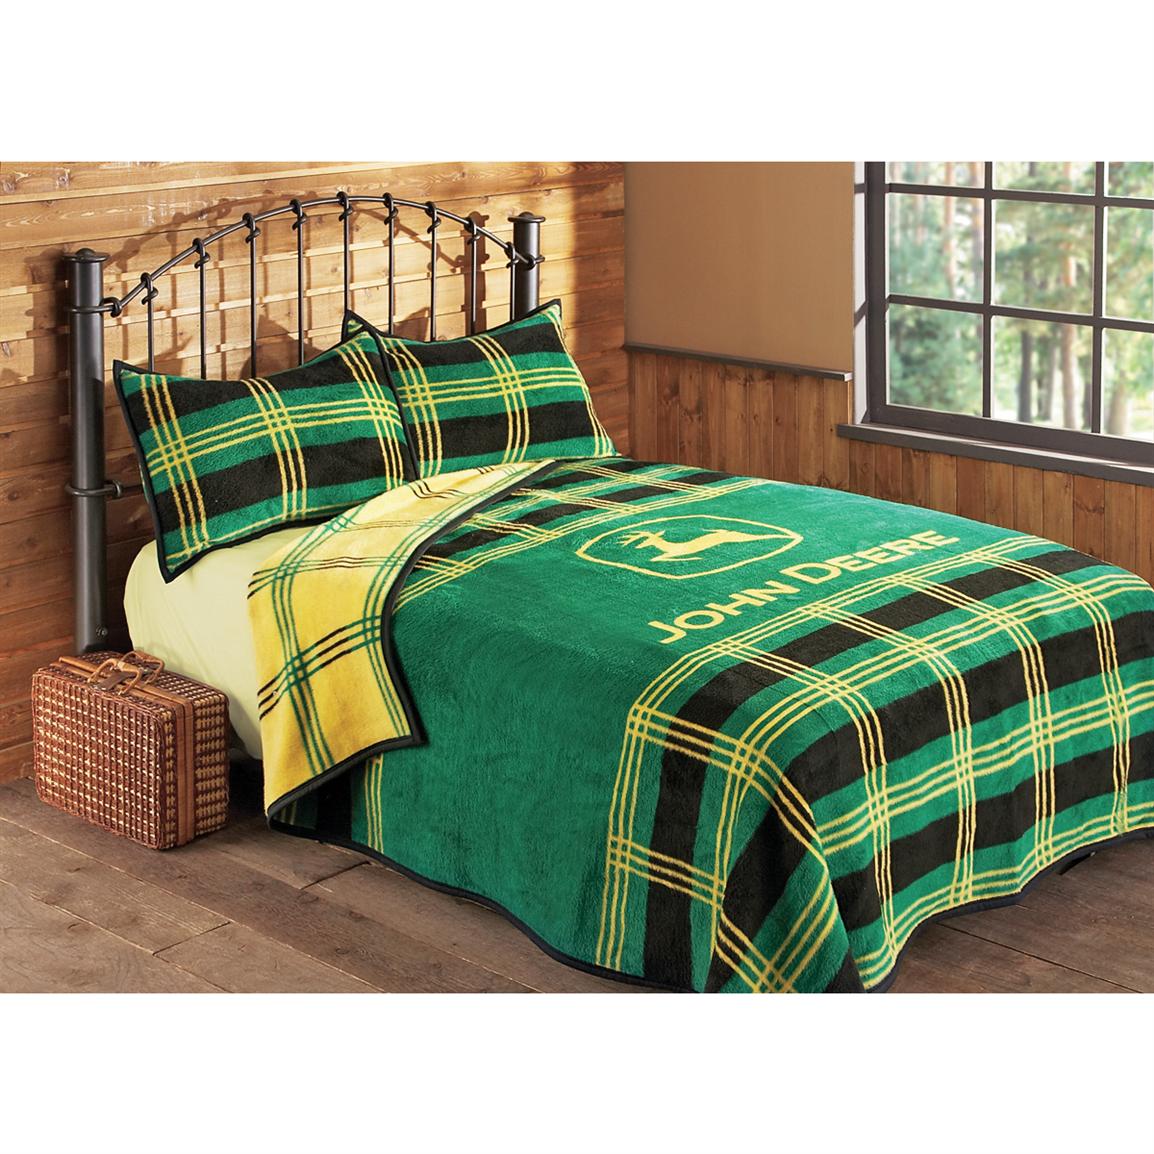 John Deere Plaid Bed Blanket 106932 Quilts Sets